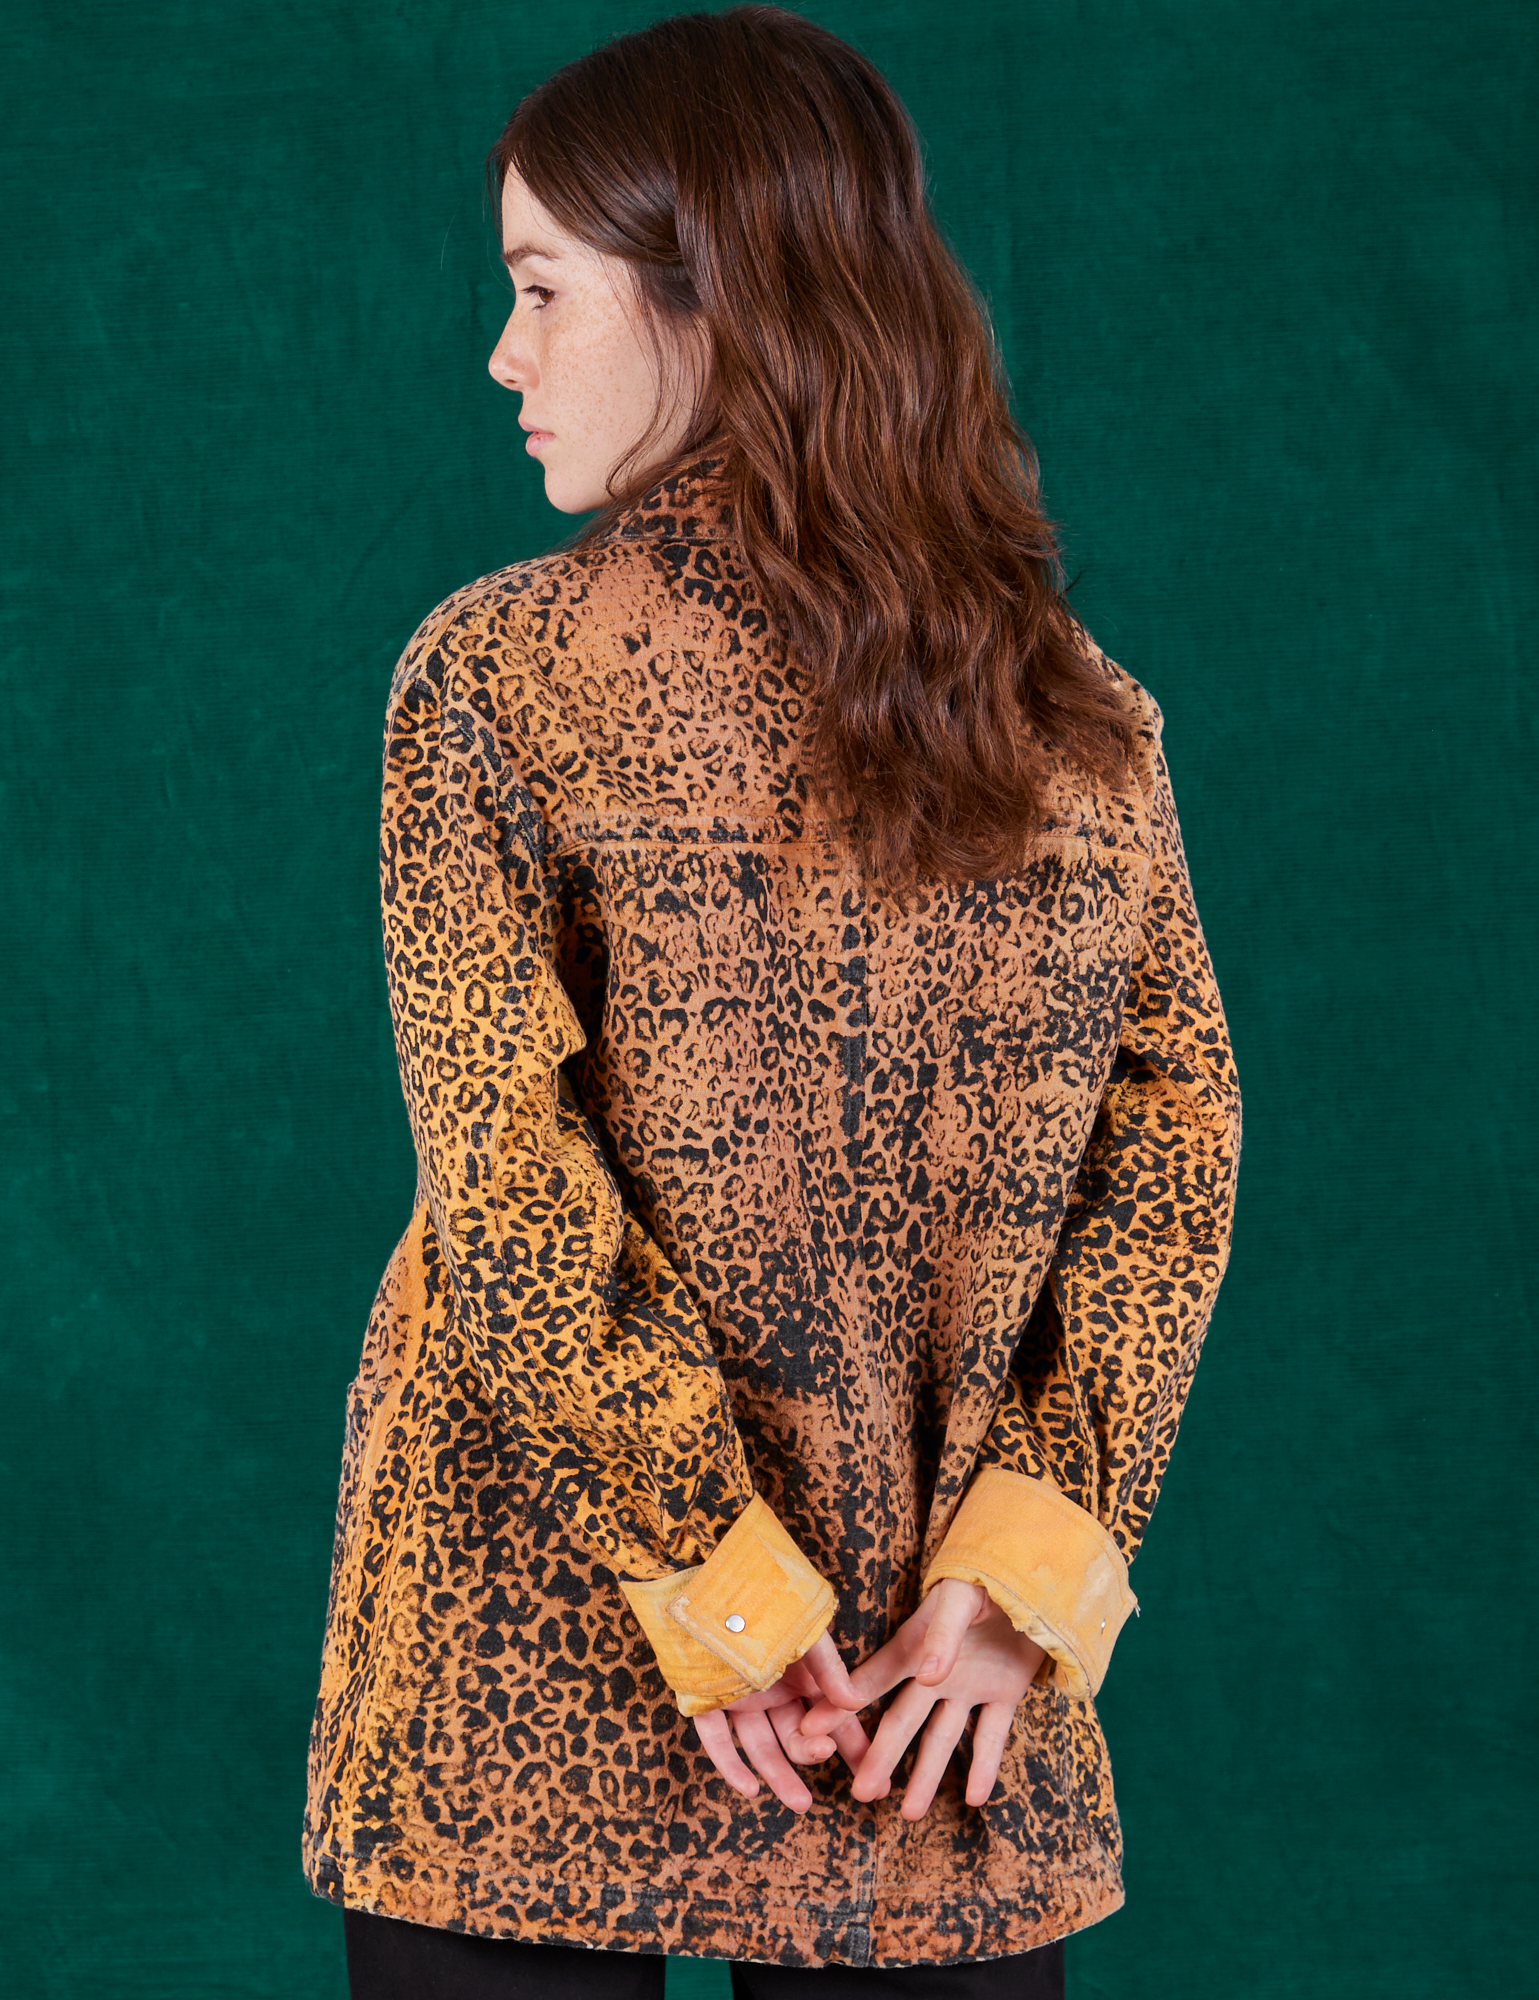 Field Coat in Leopard Print back view on Hana